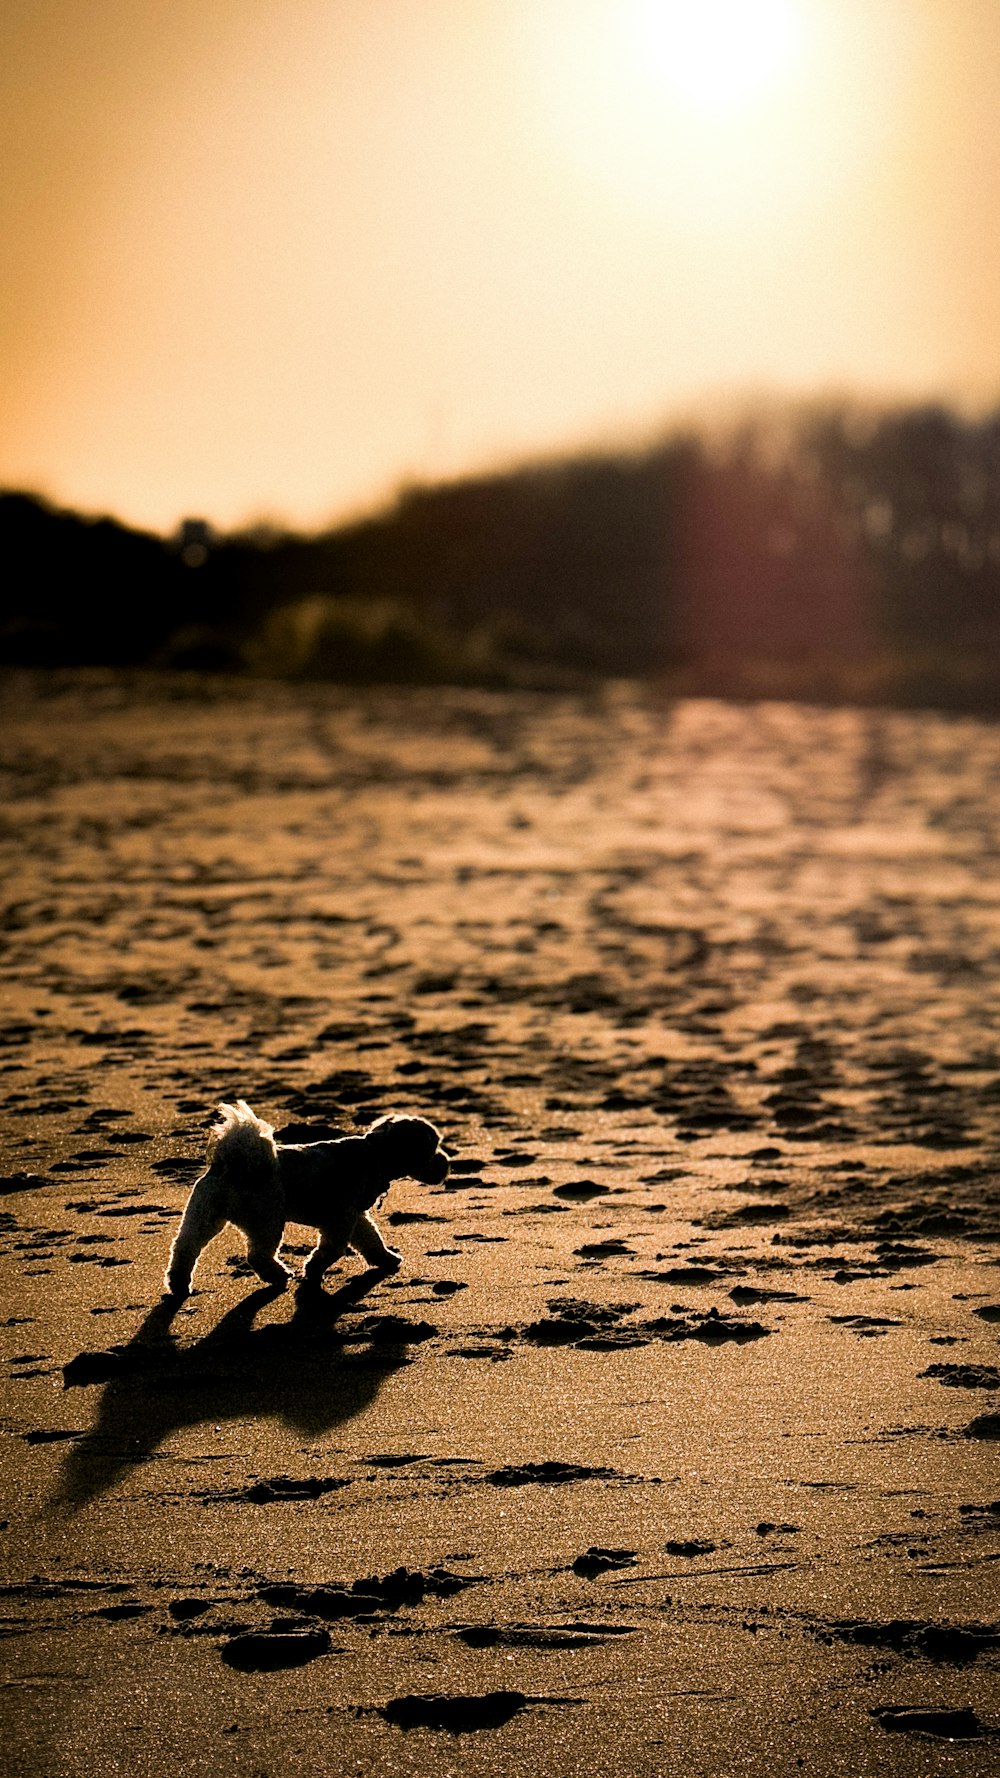 a toy dog running across a sandy beach